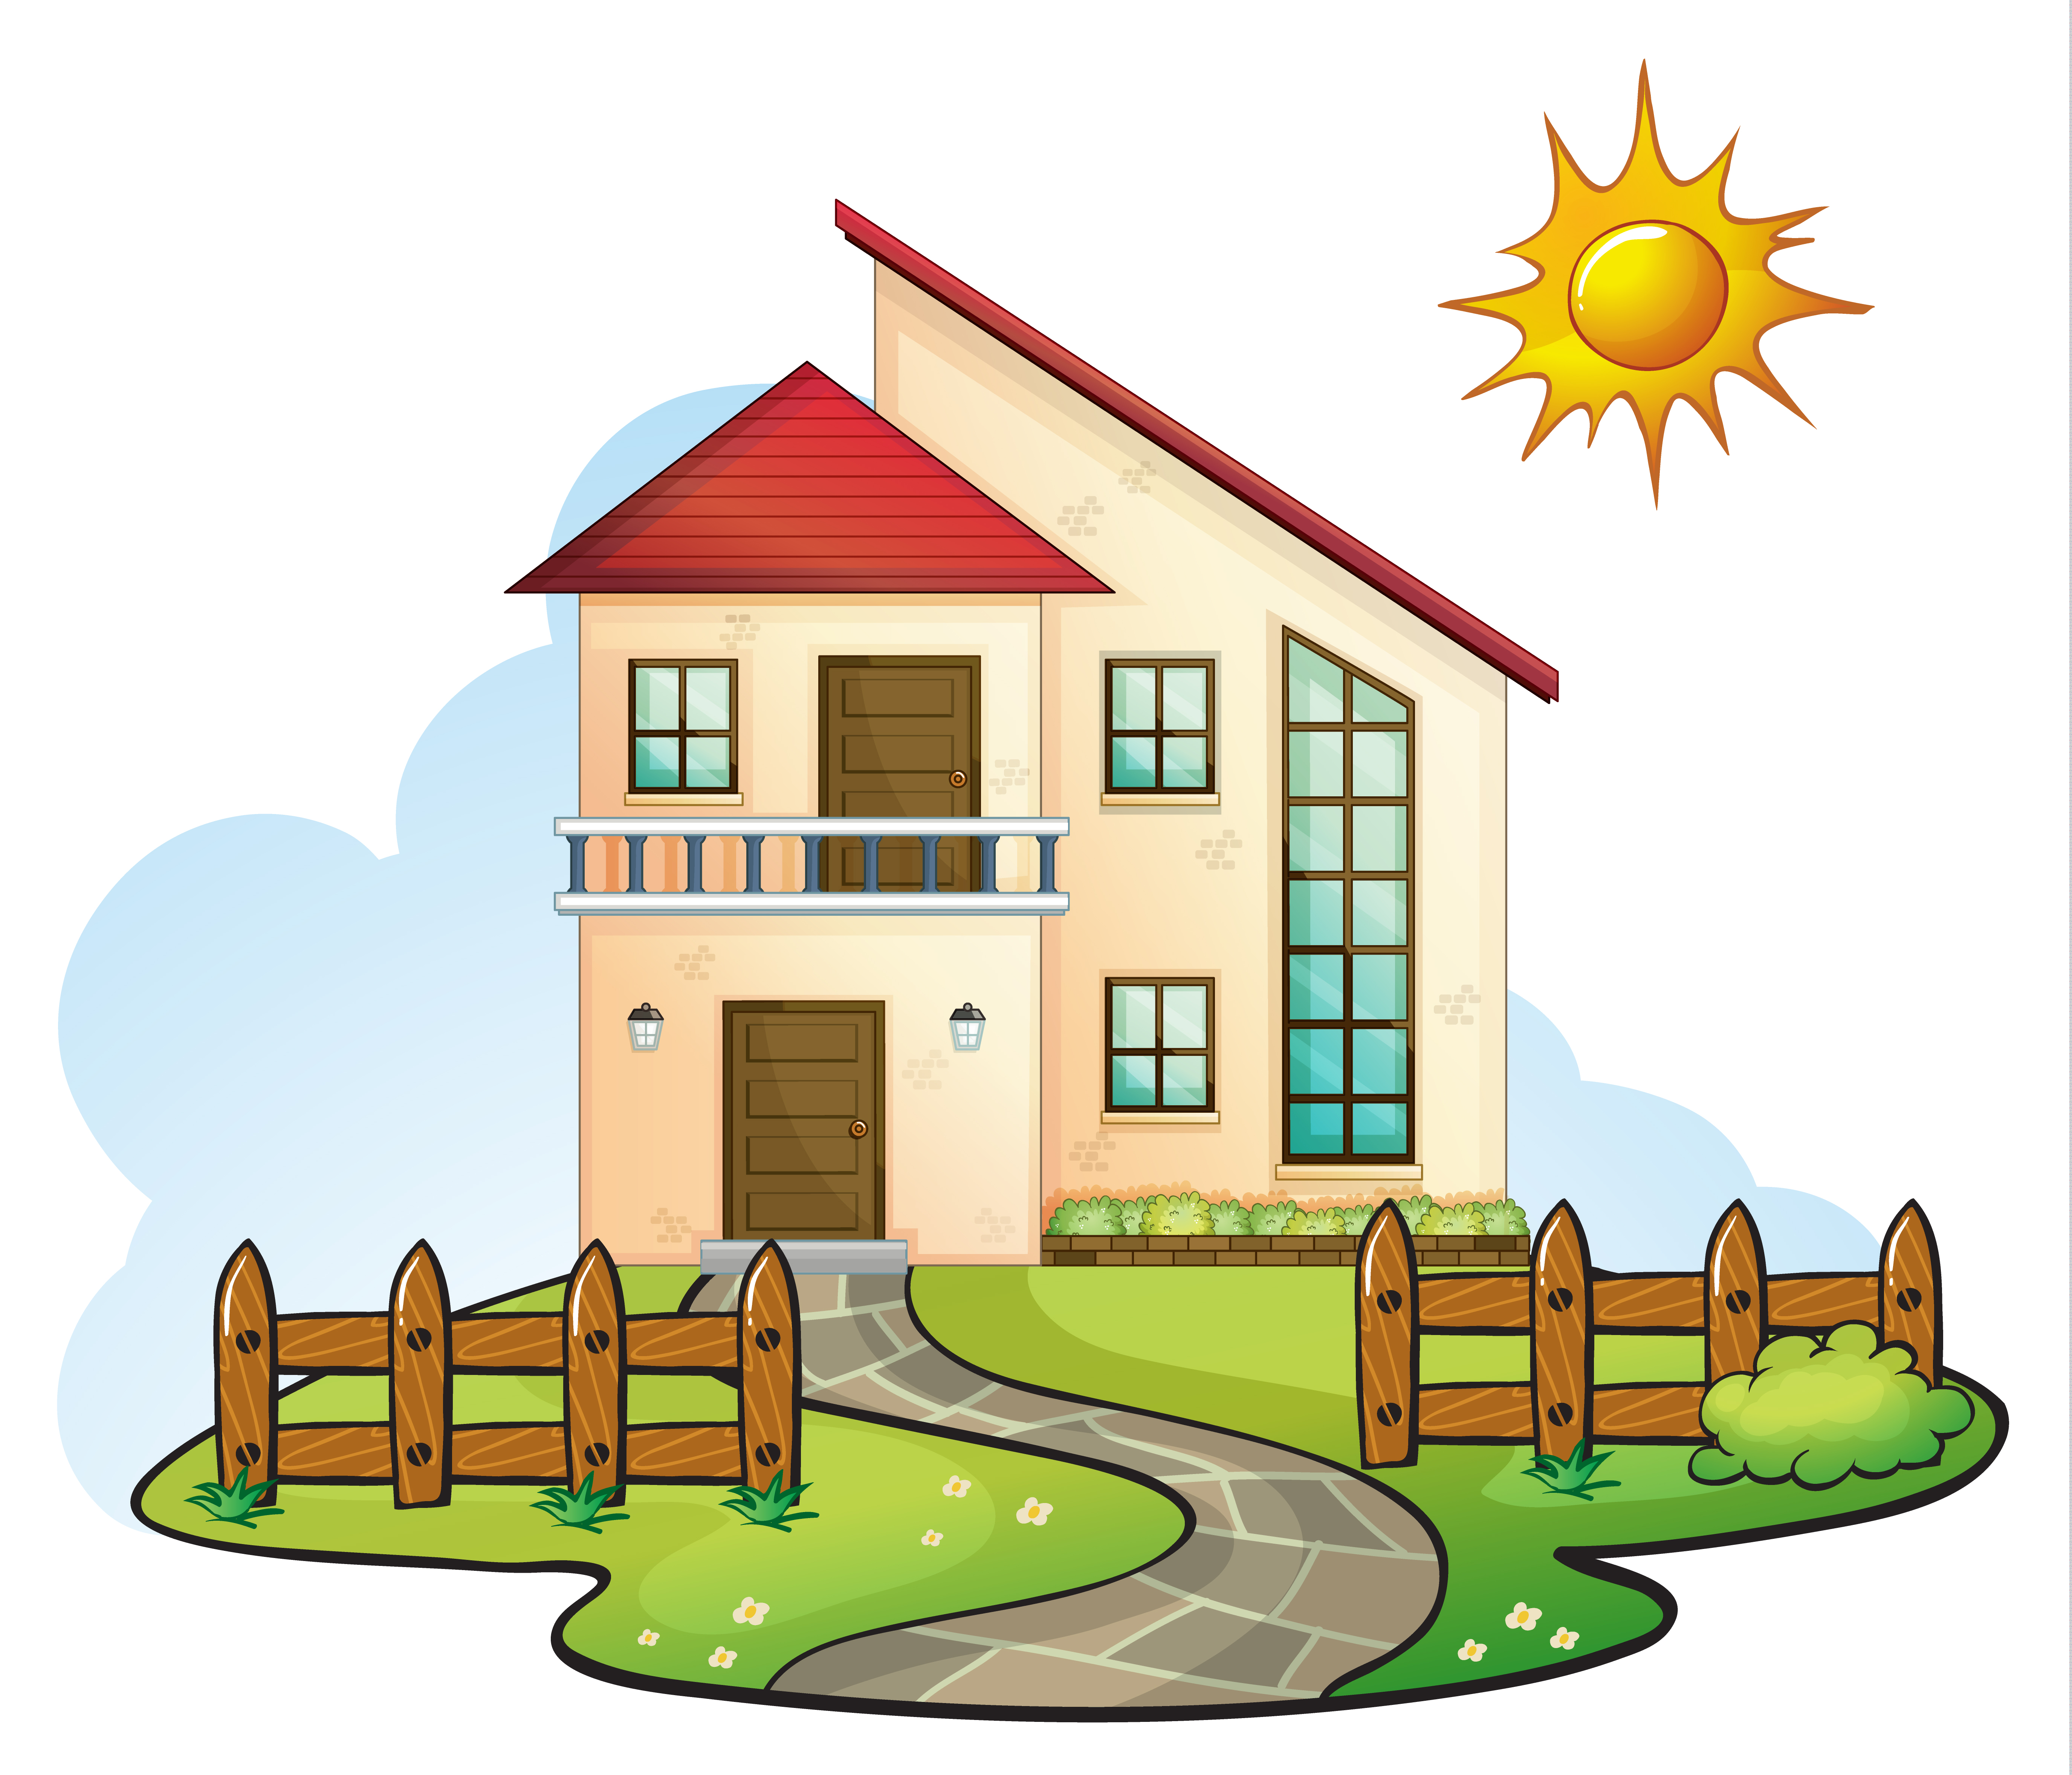 핑크 작은 집 일러스트 만화 잎 장식 건물, 노란 잎, 아름다운 집, 주택 PNG 일러스트 및 PSD 이미지 무료 다운로드 - Pngtree